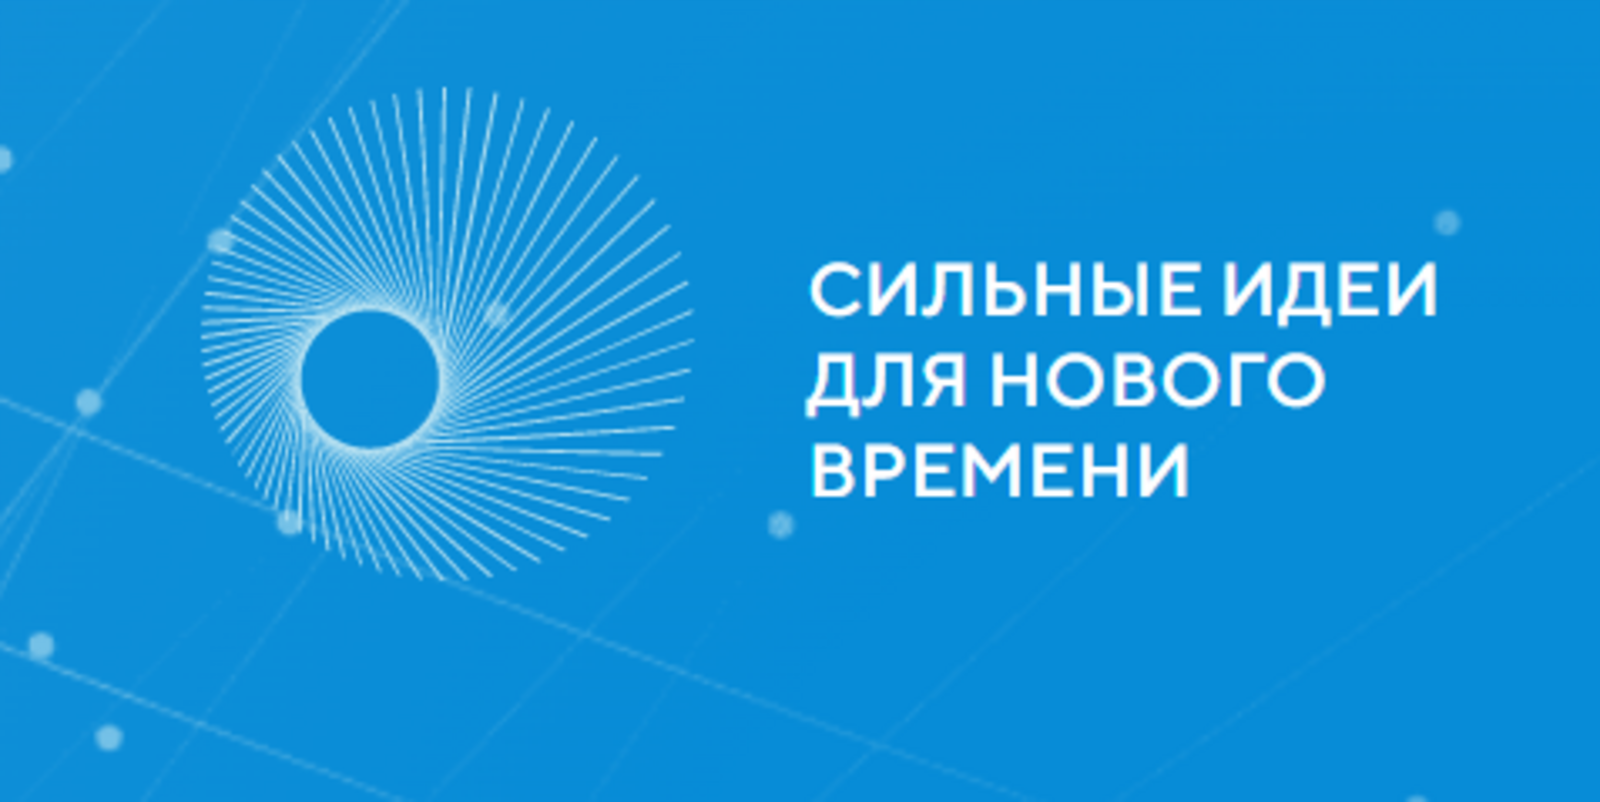 Башкортостан вошел в топ-5 самых активных регионов-участников форума «Сильные идеи для нового времени»